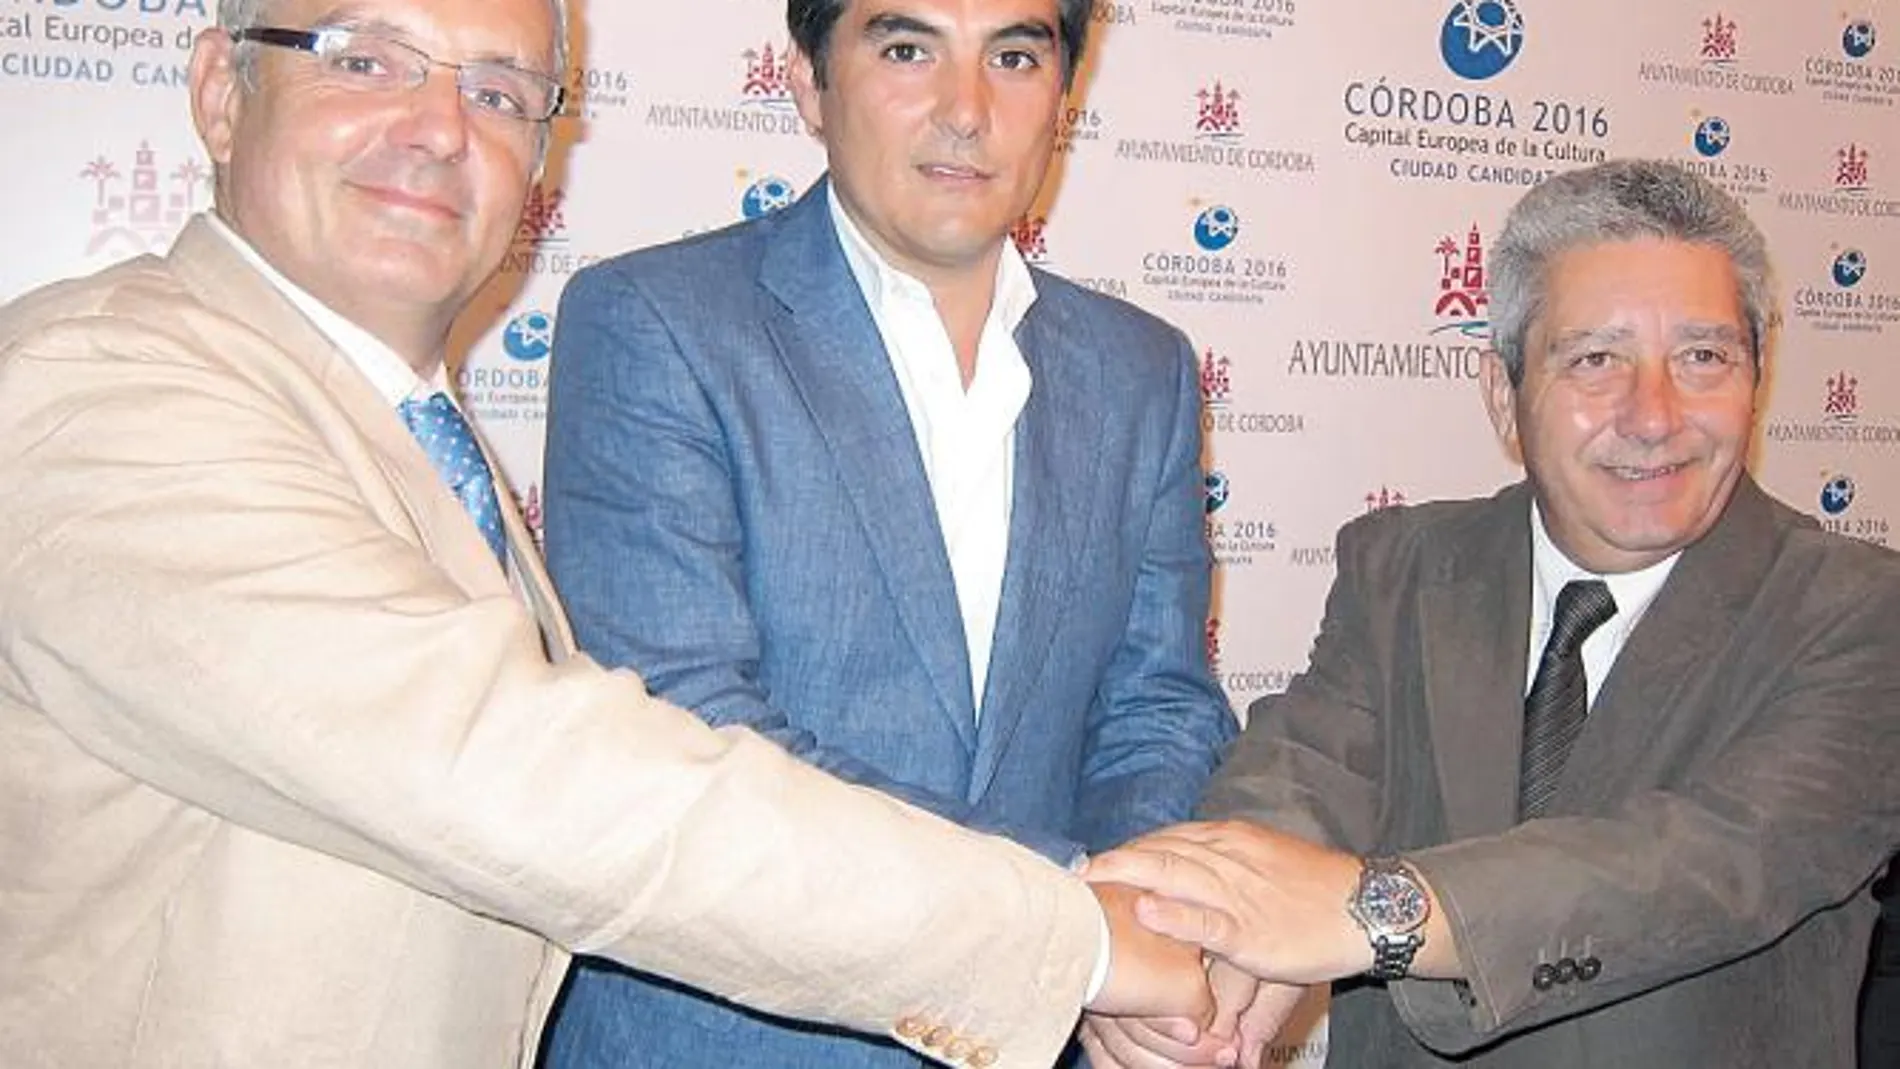 José Luis Escañuela, José Antonio Nieto y Juan Miguel Navas, presidente de la Federación Andaluza, ayer